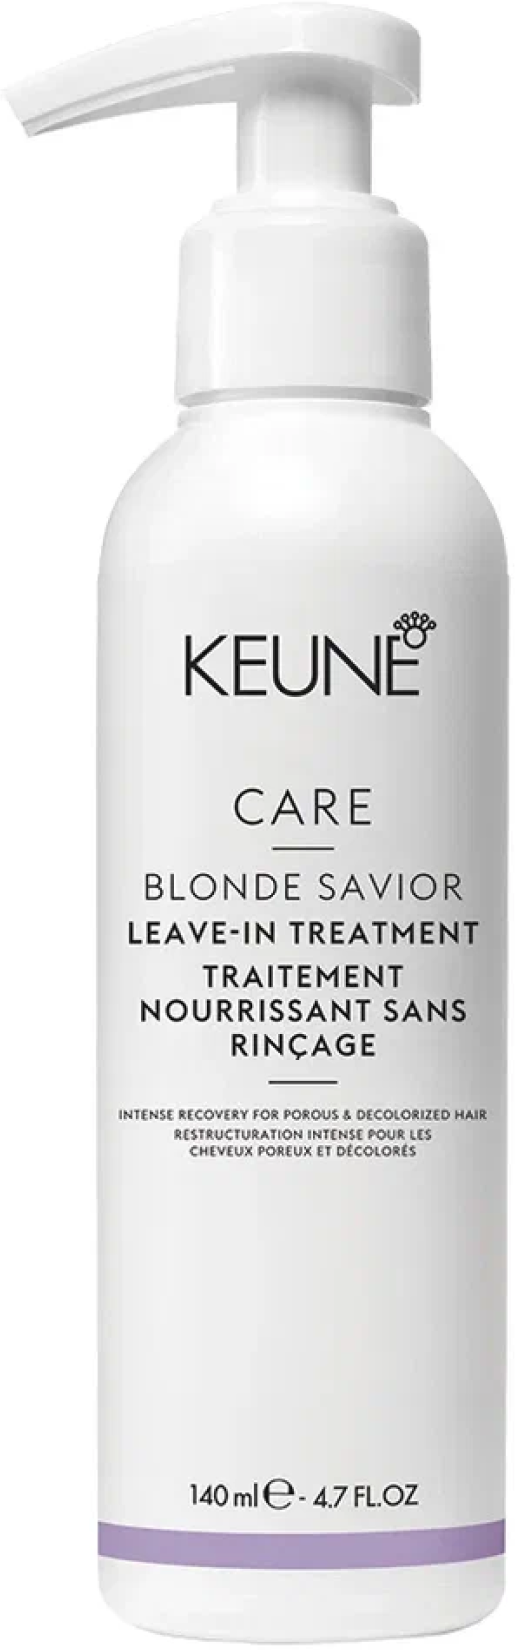 Крем-уход KEUNE, Blonde Savior Treatment, для ухода за осветленными волосами, 140 мл